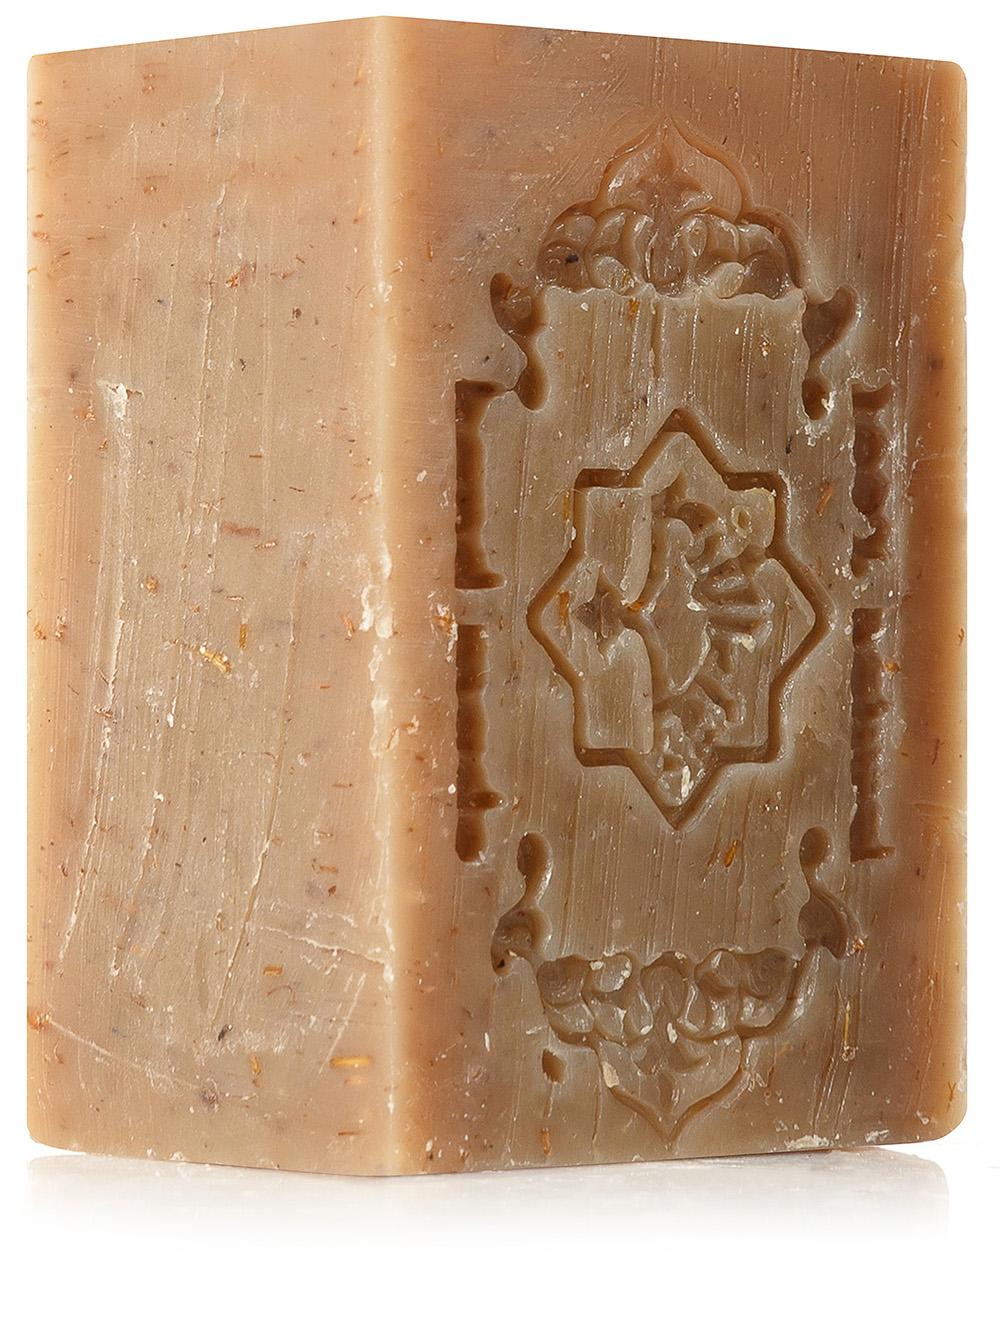 ZEITUN Алеппское мыло премиум №2 “Полевые травы” для комбинированной кожи 150 г